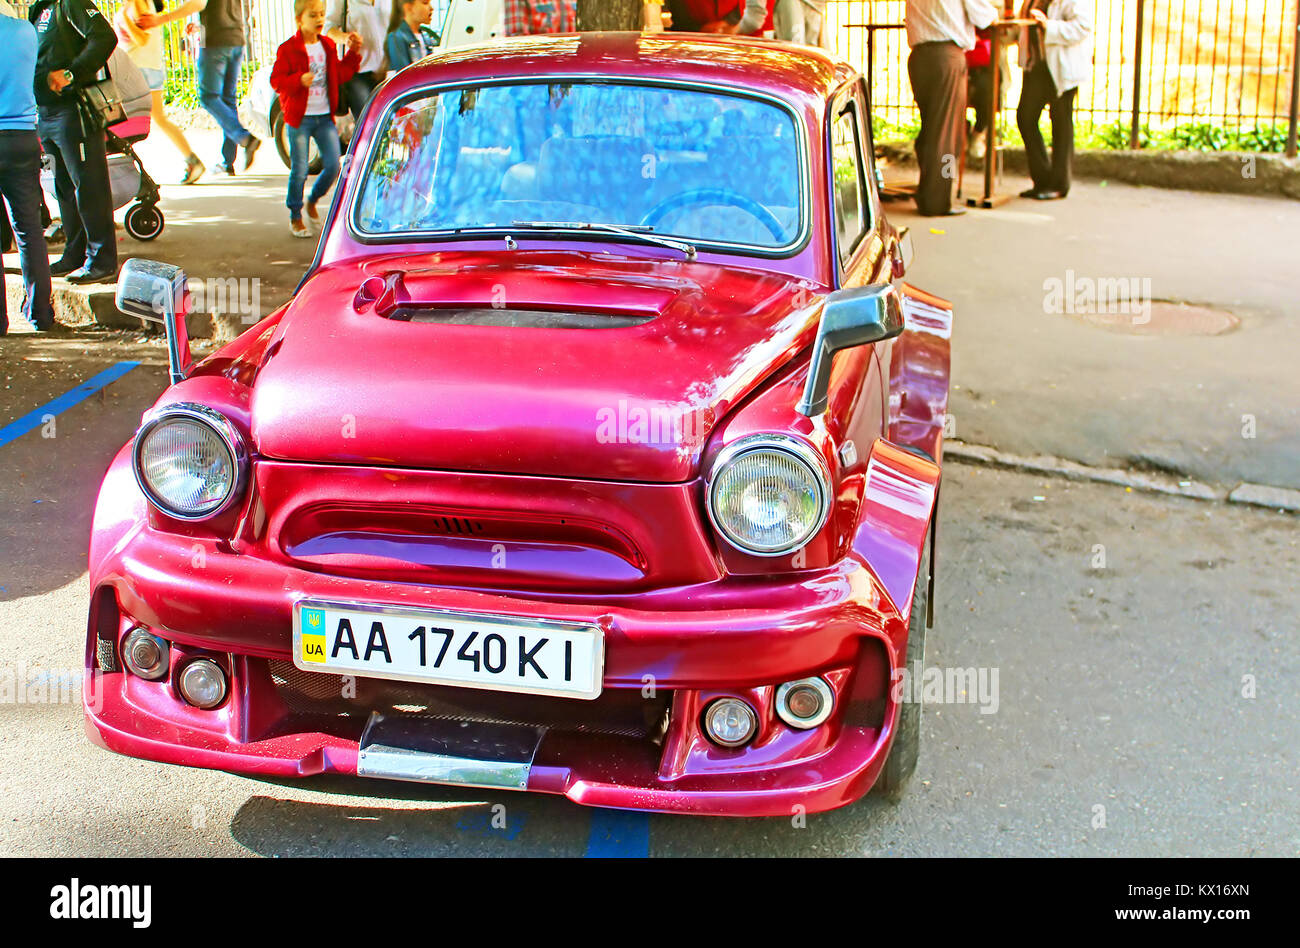 VINNYTSIA, UKRAINE - MAY 14, 2016: Retro car on the street in Vinnytsia on the frame of Day of Europe in Vinnytsia, Ukraine Stock Photo